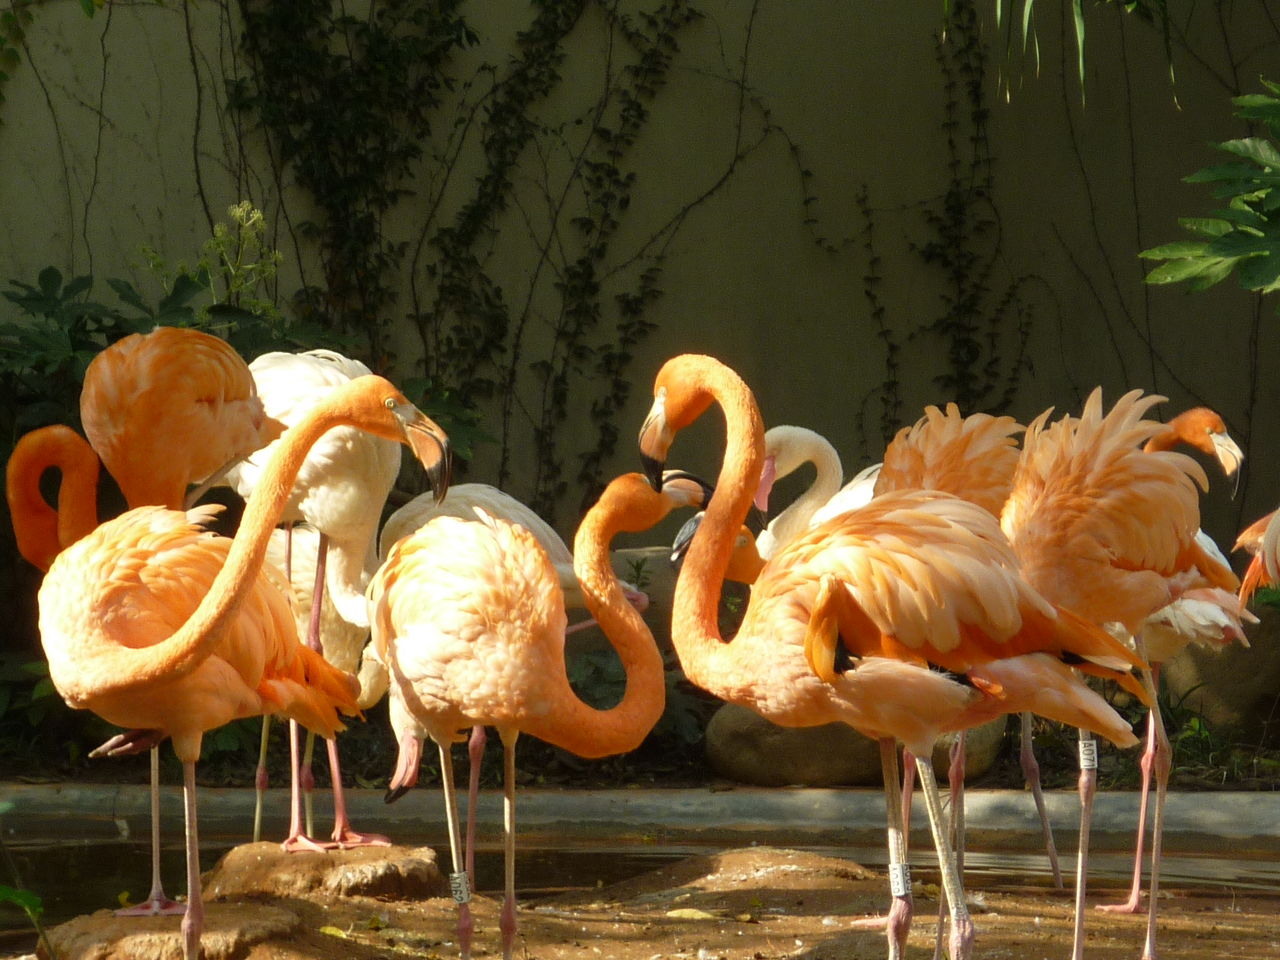 上海動物園 鳥区の続き 私の大切にするもの